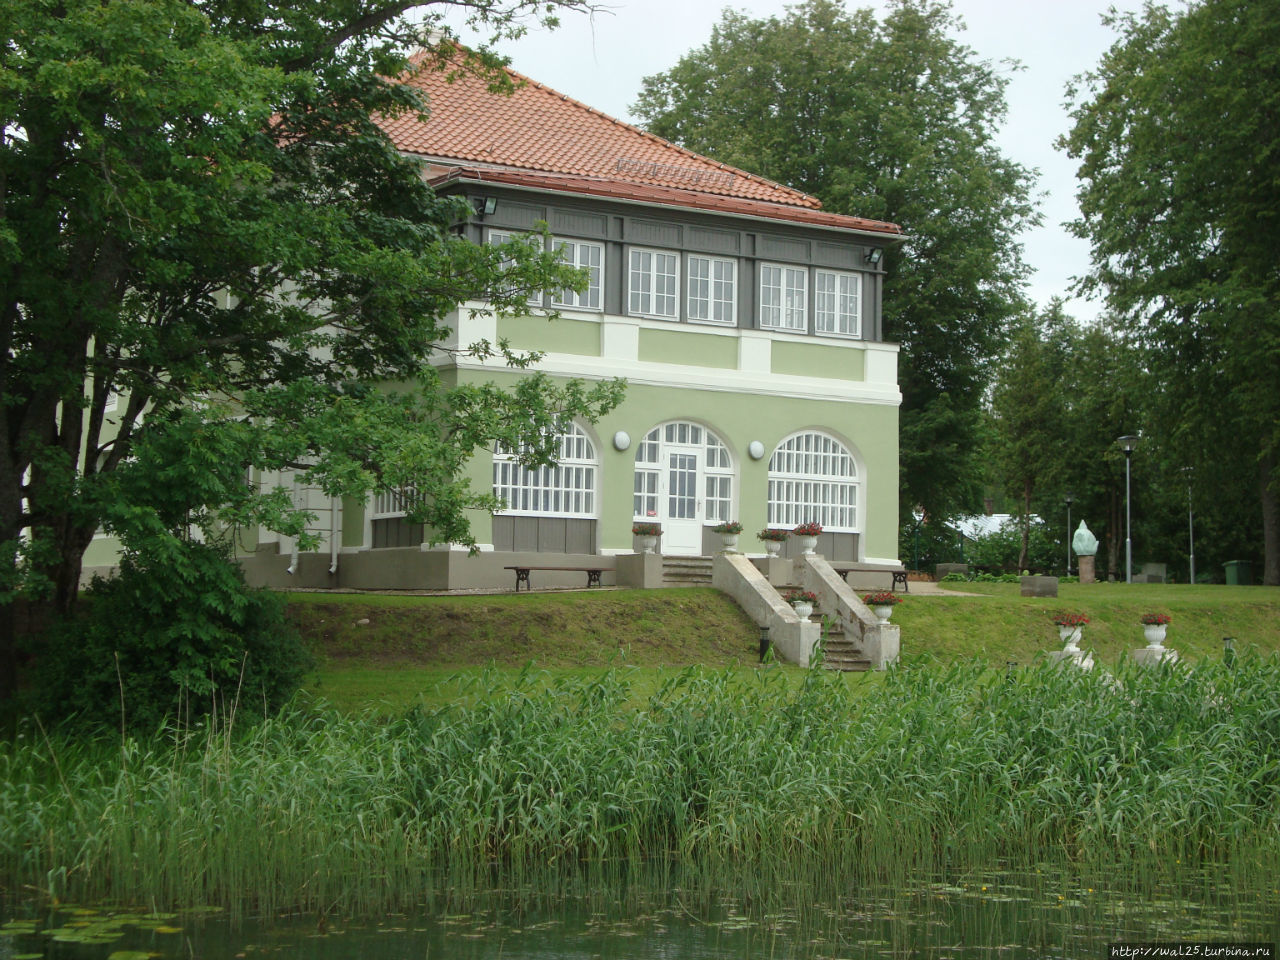 Дом управляющего имением на берегу озера. Балвский район, Латвия